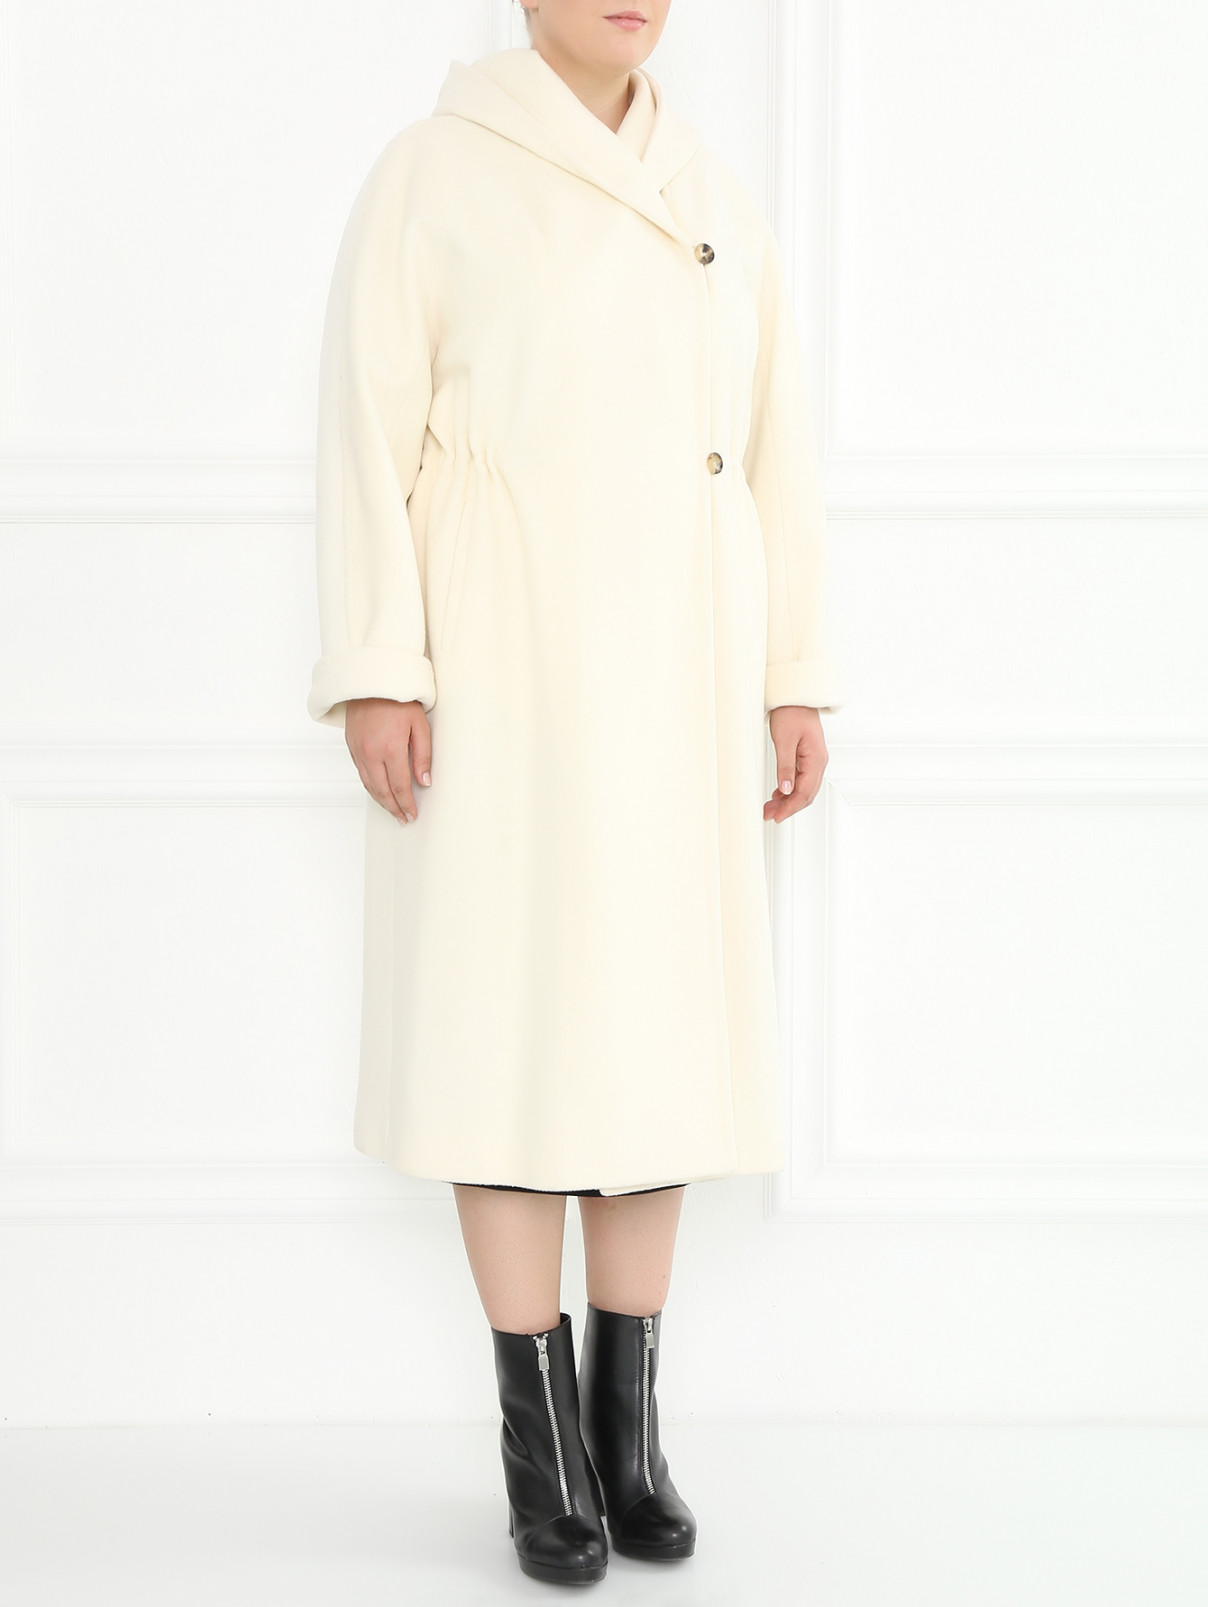 Пальто из шерсти и кашемира с капюшоном Marina Rinaldi  –  Модель Общий вид  – Цвет:  Белый